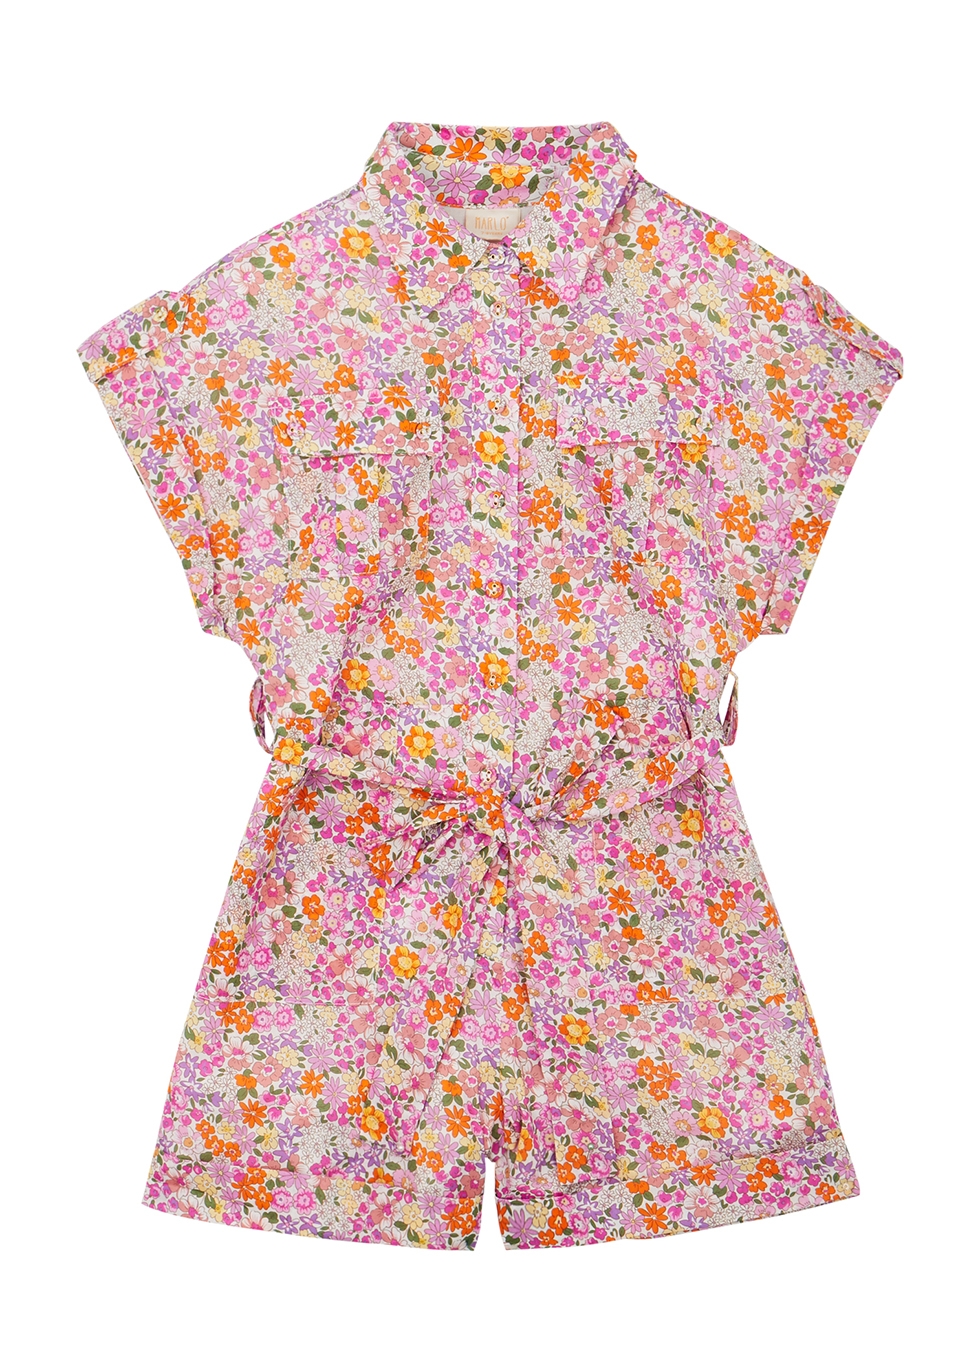 KIDS Blaire floral-print cotton playsuit Harvey Nichols Clothing Playsuits 